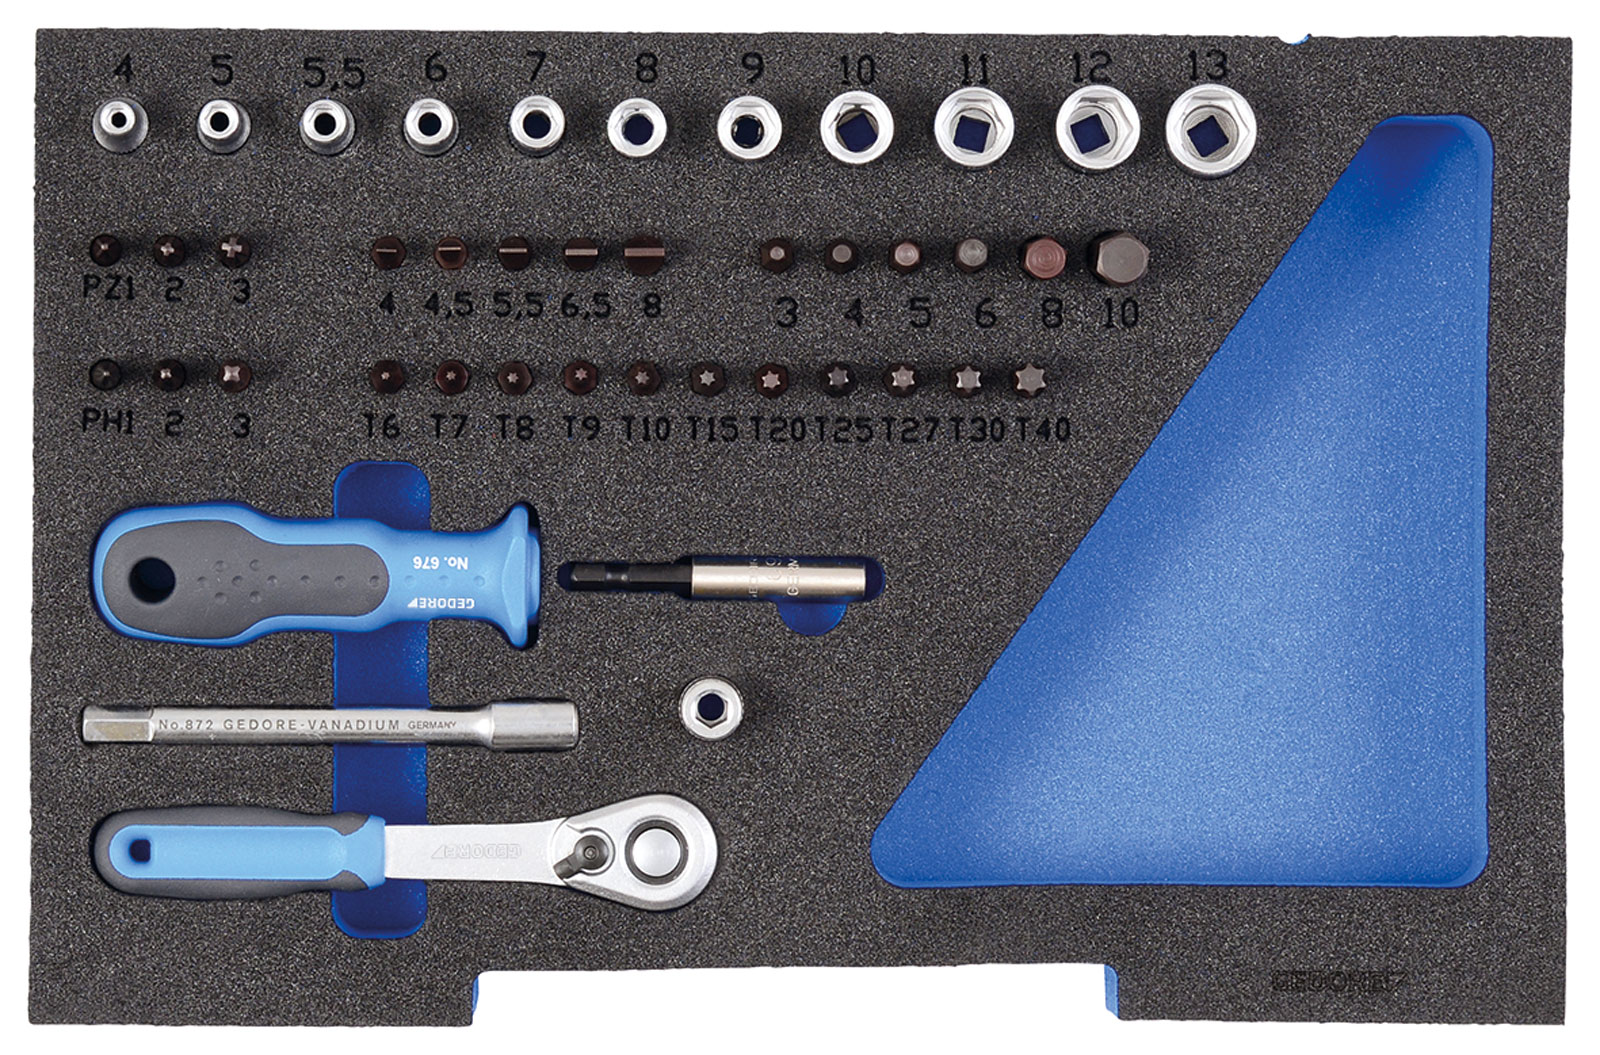 Bild für Kategorie 1100 W-002 VDE Werkzeugkarte mit VDE-Zangen/Schraubendreher-Sortiment 9-teilig